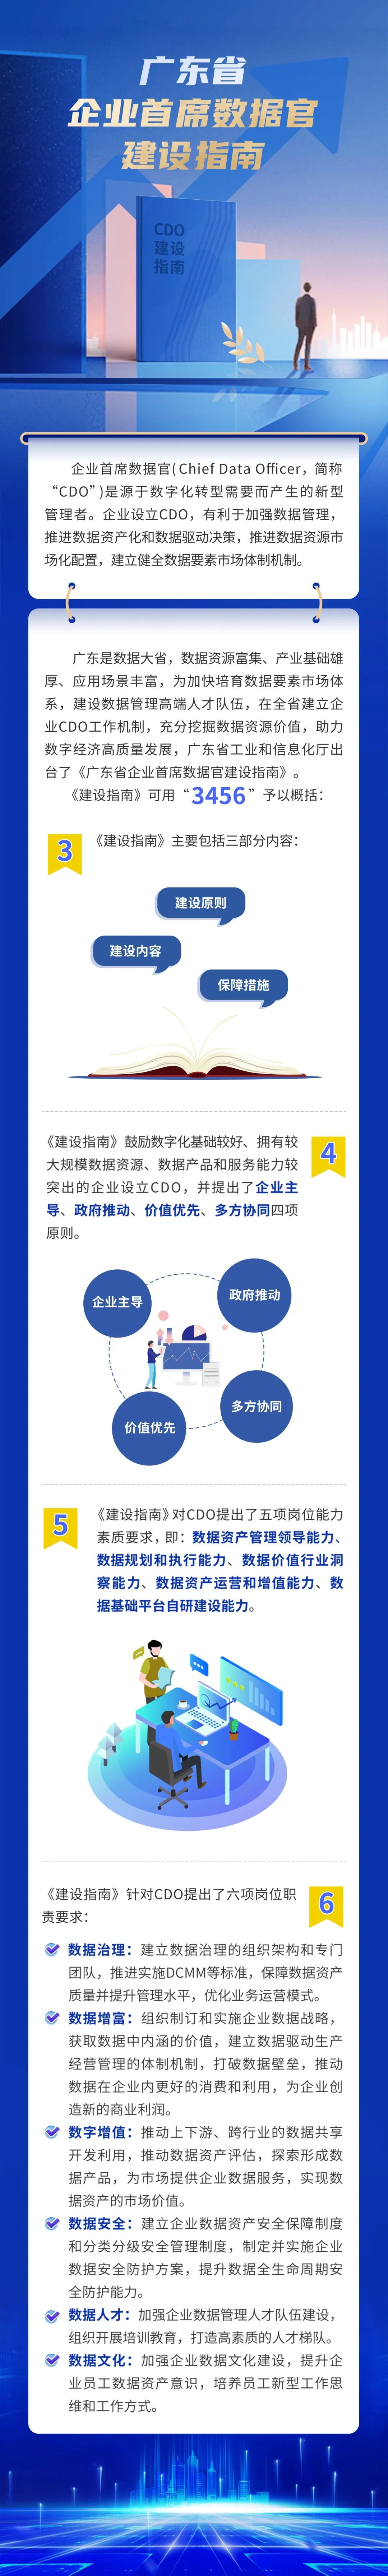 《廣東省企業首席數據官建設指南》發布